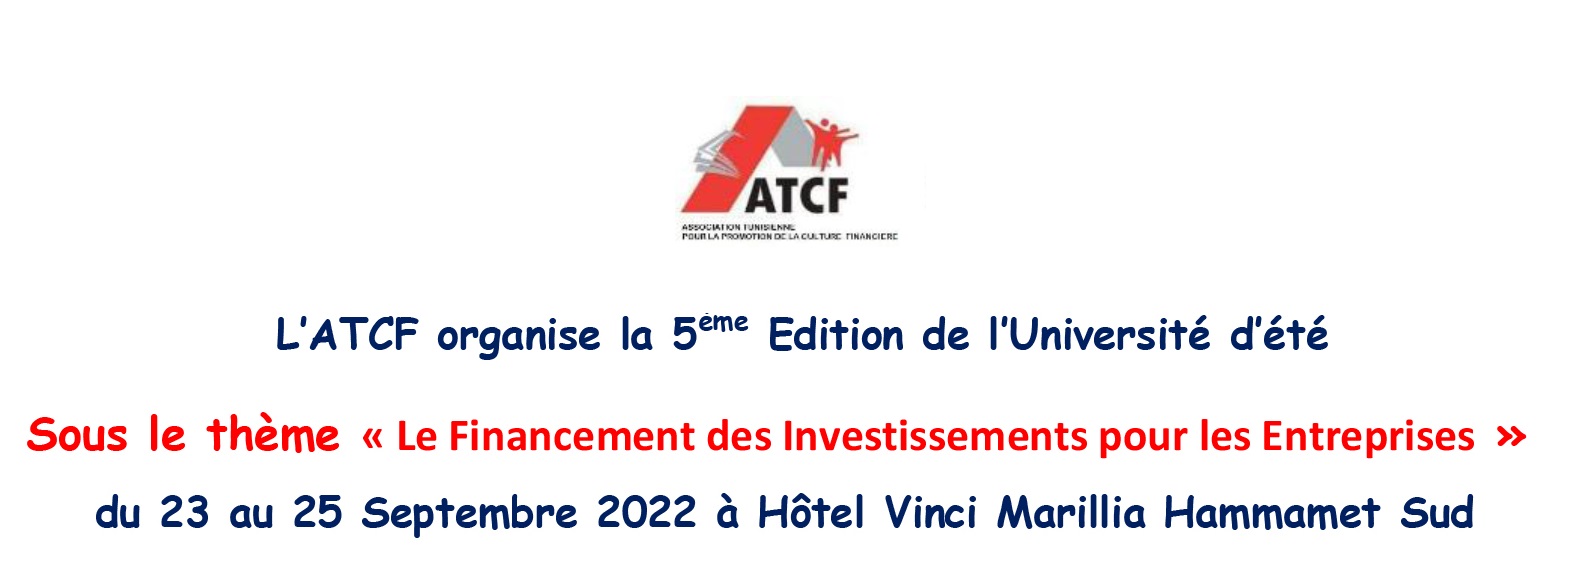 الجمعية التونسية للثقافة المالية تنظّم الدورة الخامسة للجامعة الصيفية المغاربية للقطاع المالي